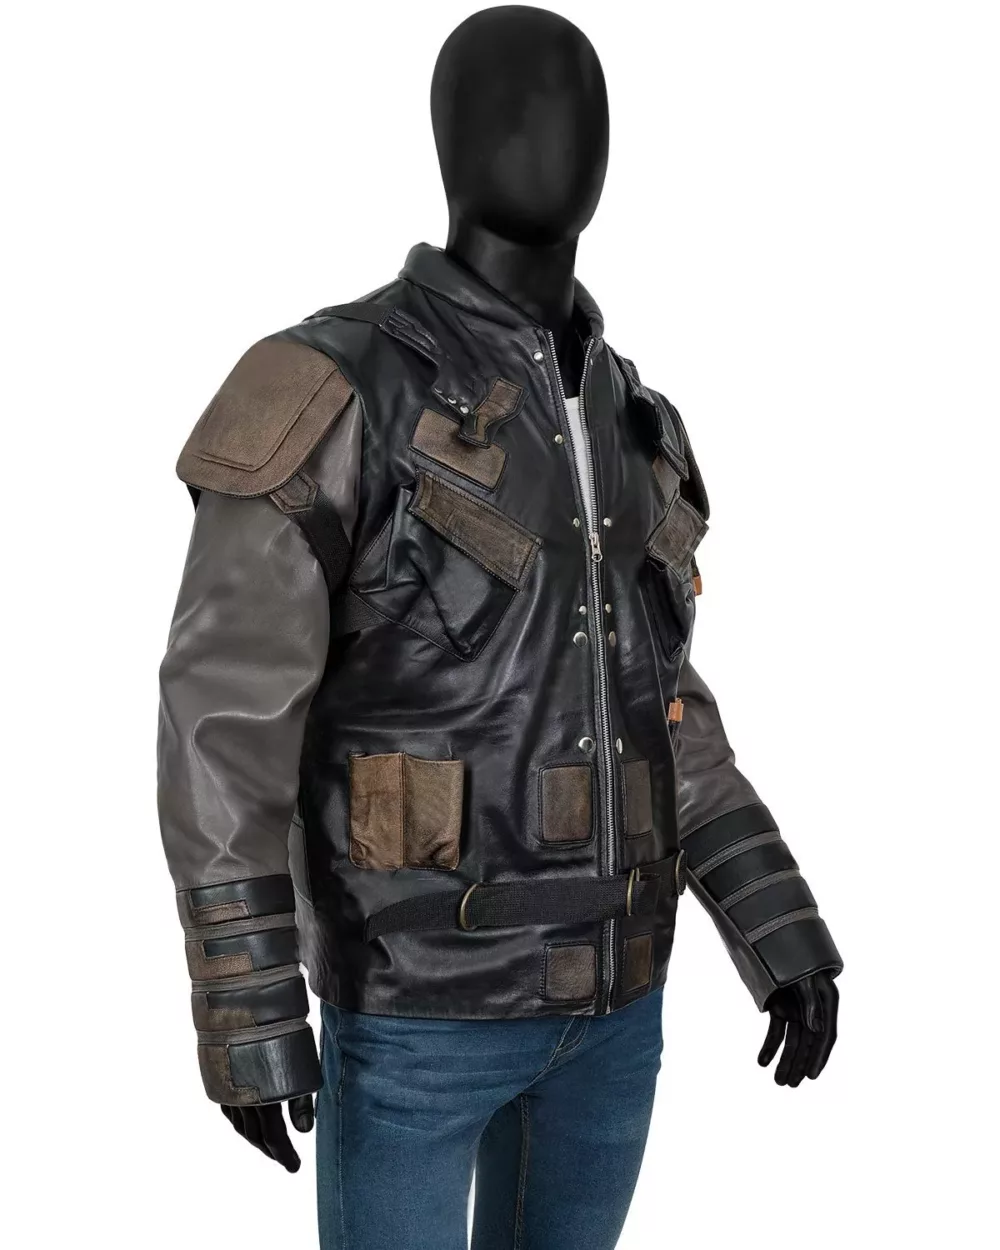 The Suicide Squad 2 Blackguard Jacket